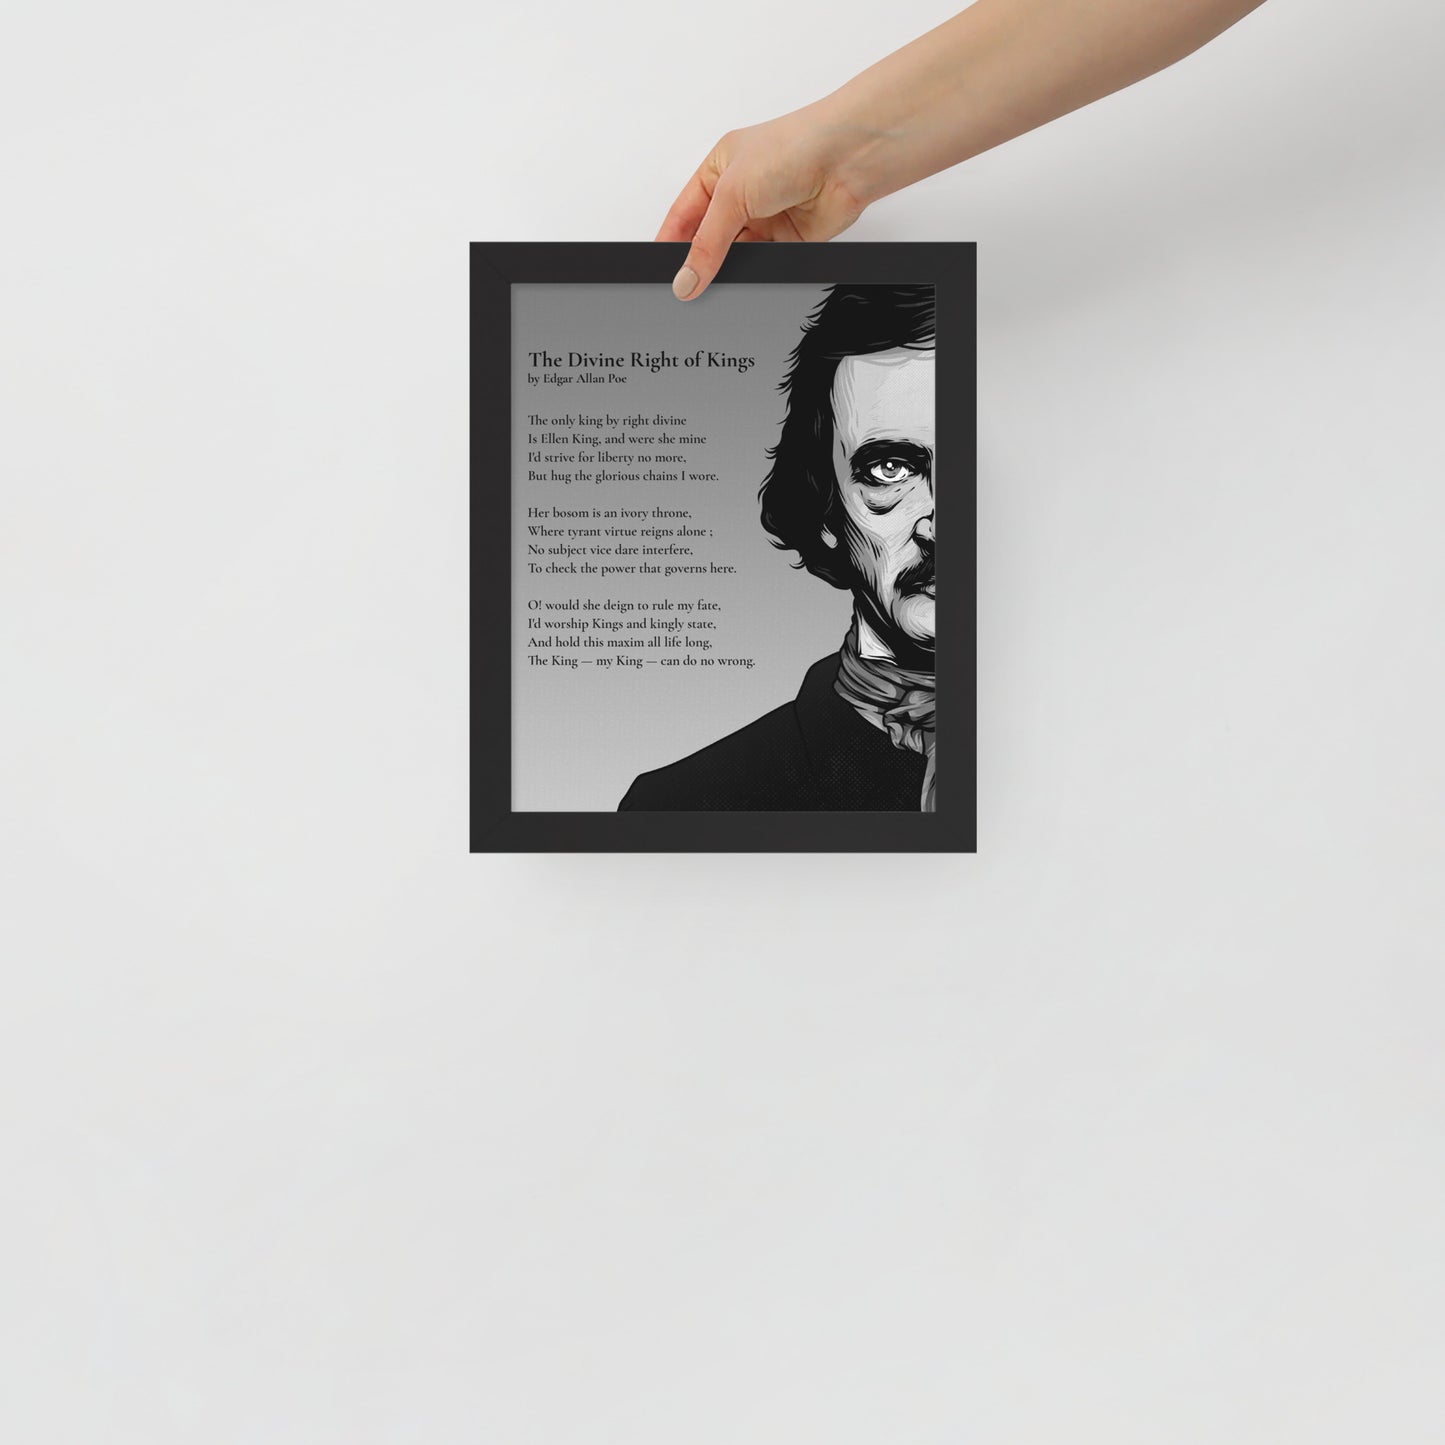 Edgar Allan Poe's 'The Divine Right of Kings' Framed Matted Poster - 8 x 10 Black Frame